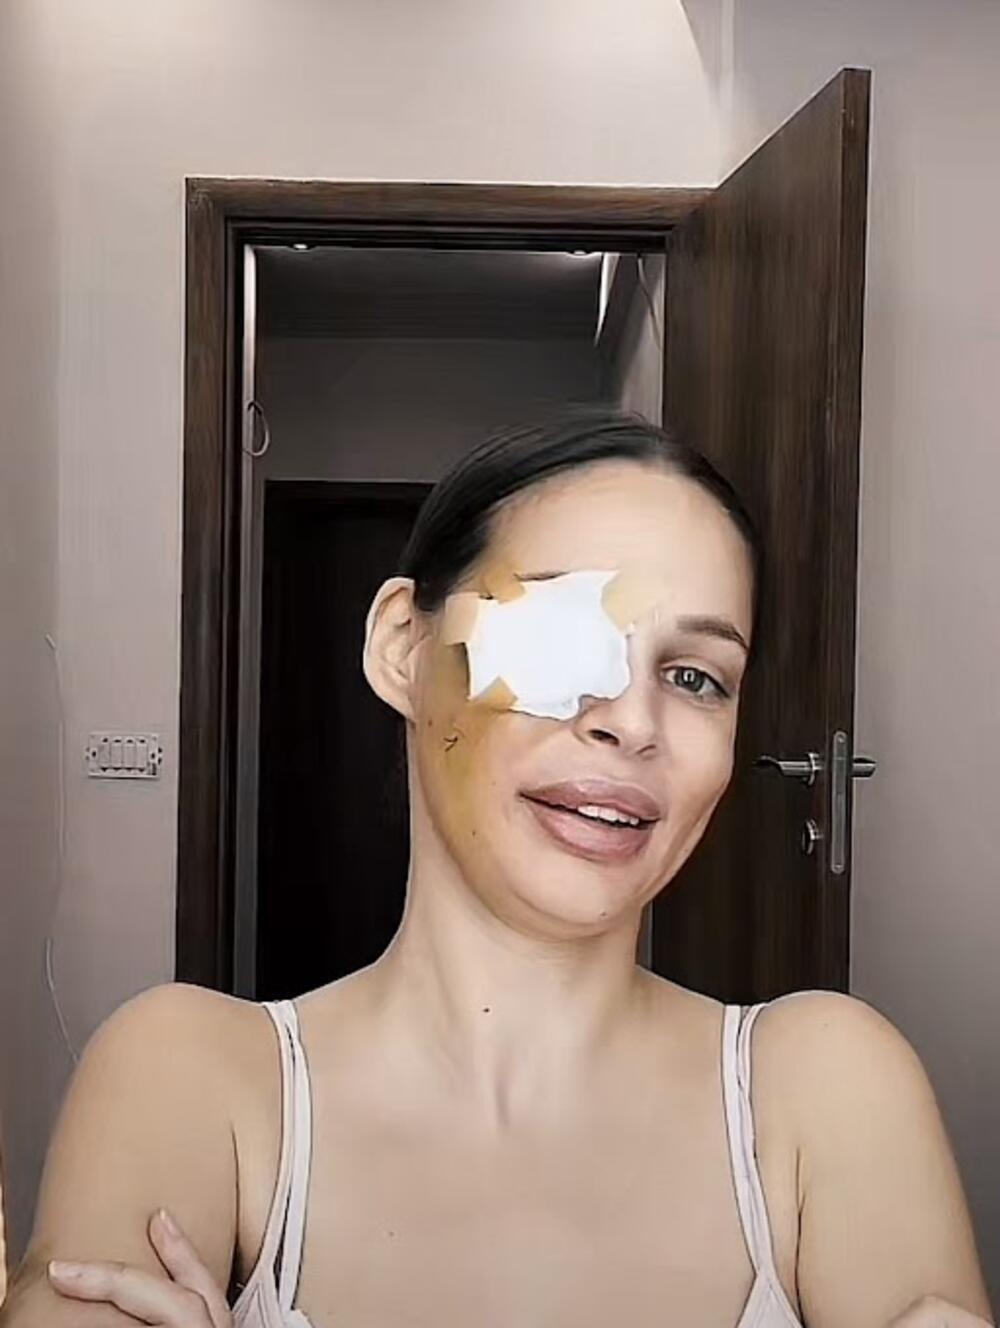  Nataša Šavija uključila se u lajv na društvenoj mreži Tiktok i pokazala kako izgleda nakon operacije